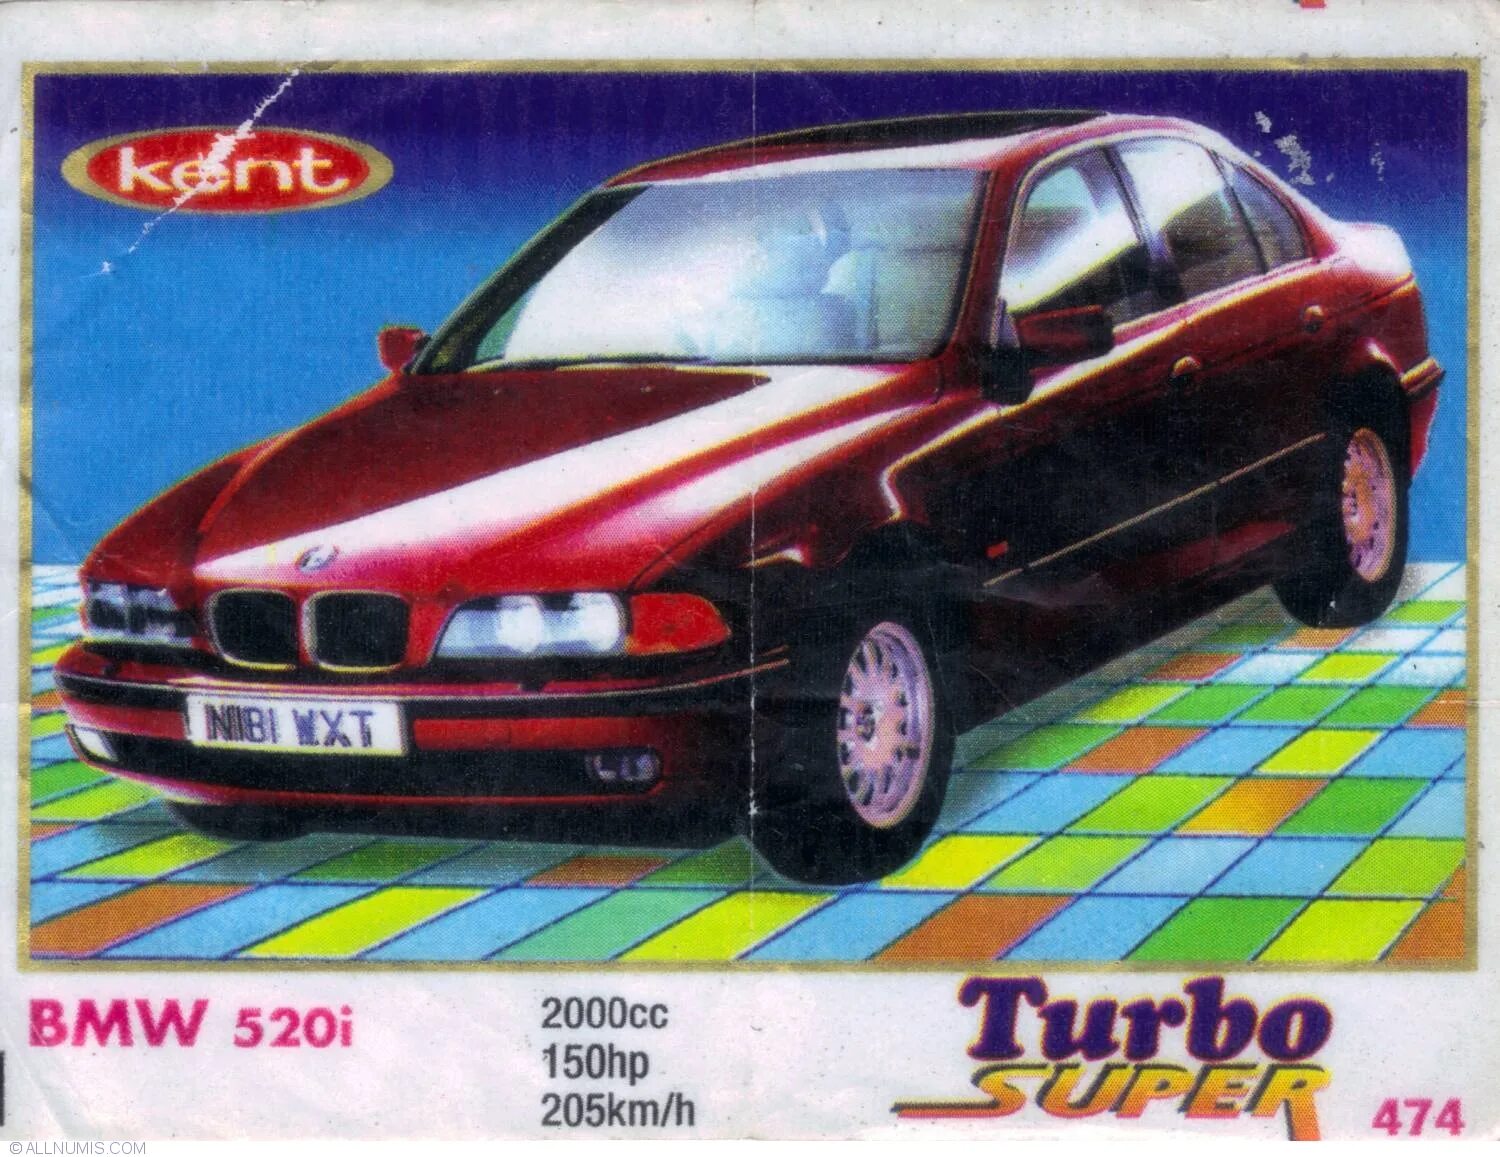 Вкладыши bmw. BMW 520i вкладыши турбо. Вкладыш турбо БМВ е036. BMW e34 вкладыши Turbo. Turbo super 2000 вкладыши.